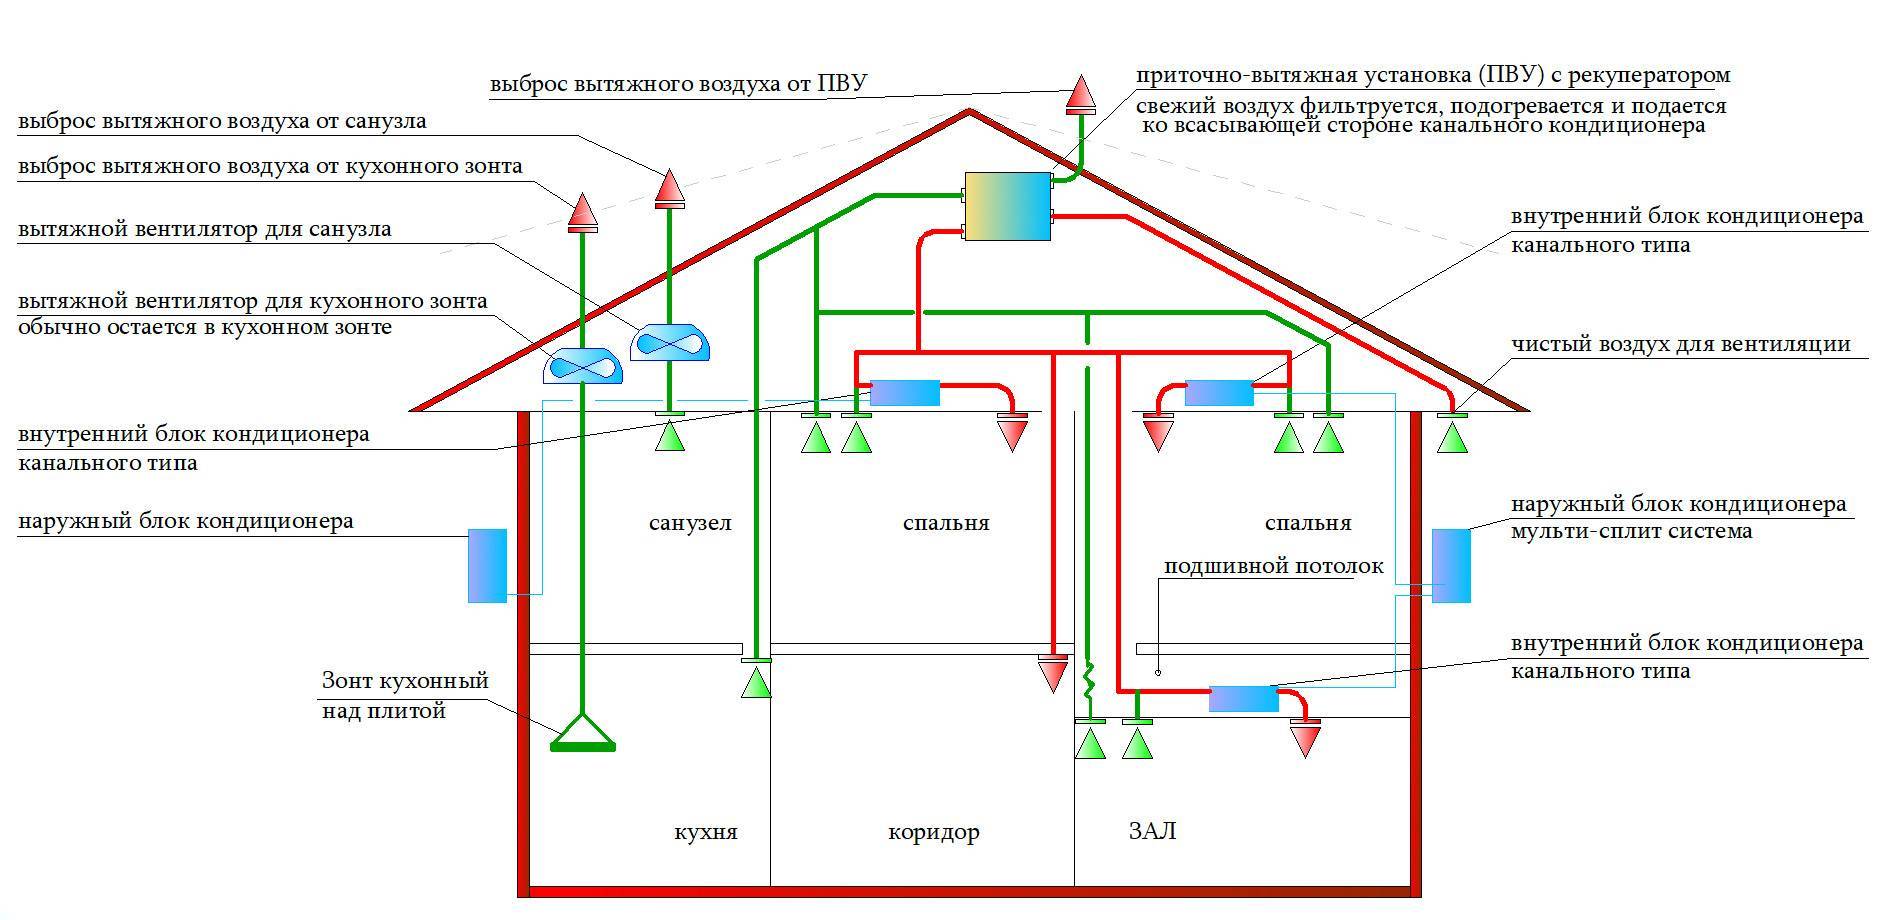 Пример расчета системы вентиляции производственного помещения на 100 м2